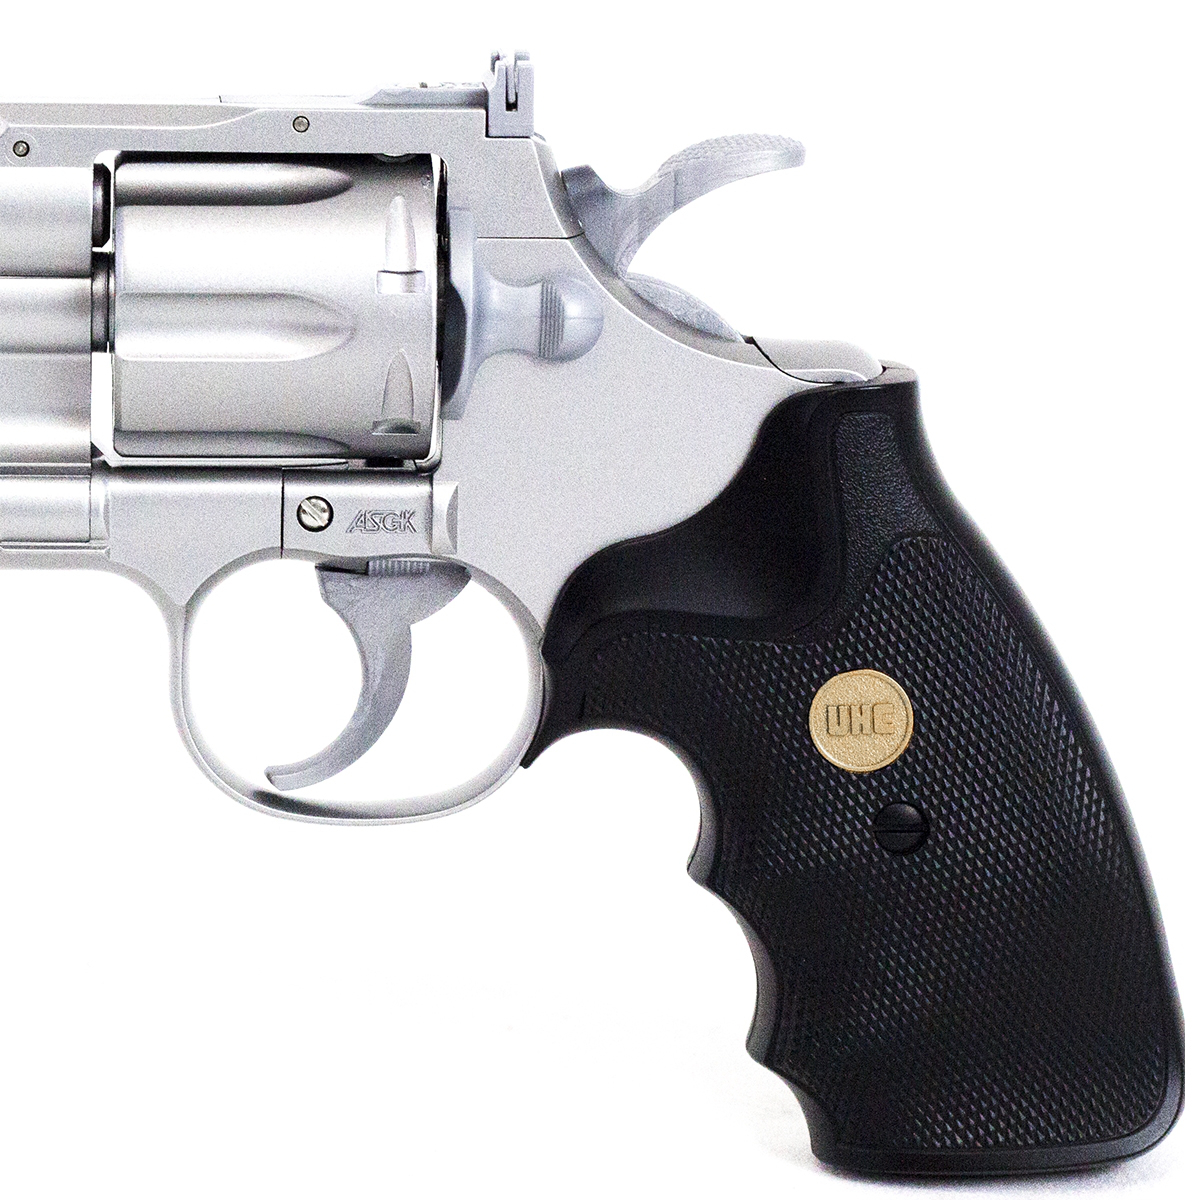 Pistola Airsoft Spring UHC 357 Magnum Calibre 6mm 